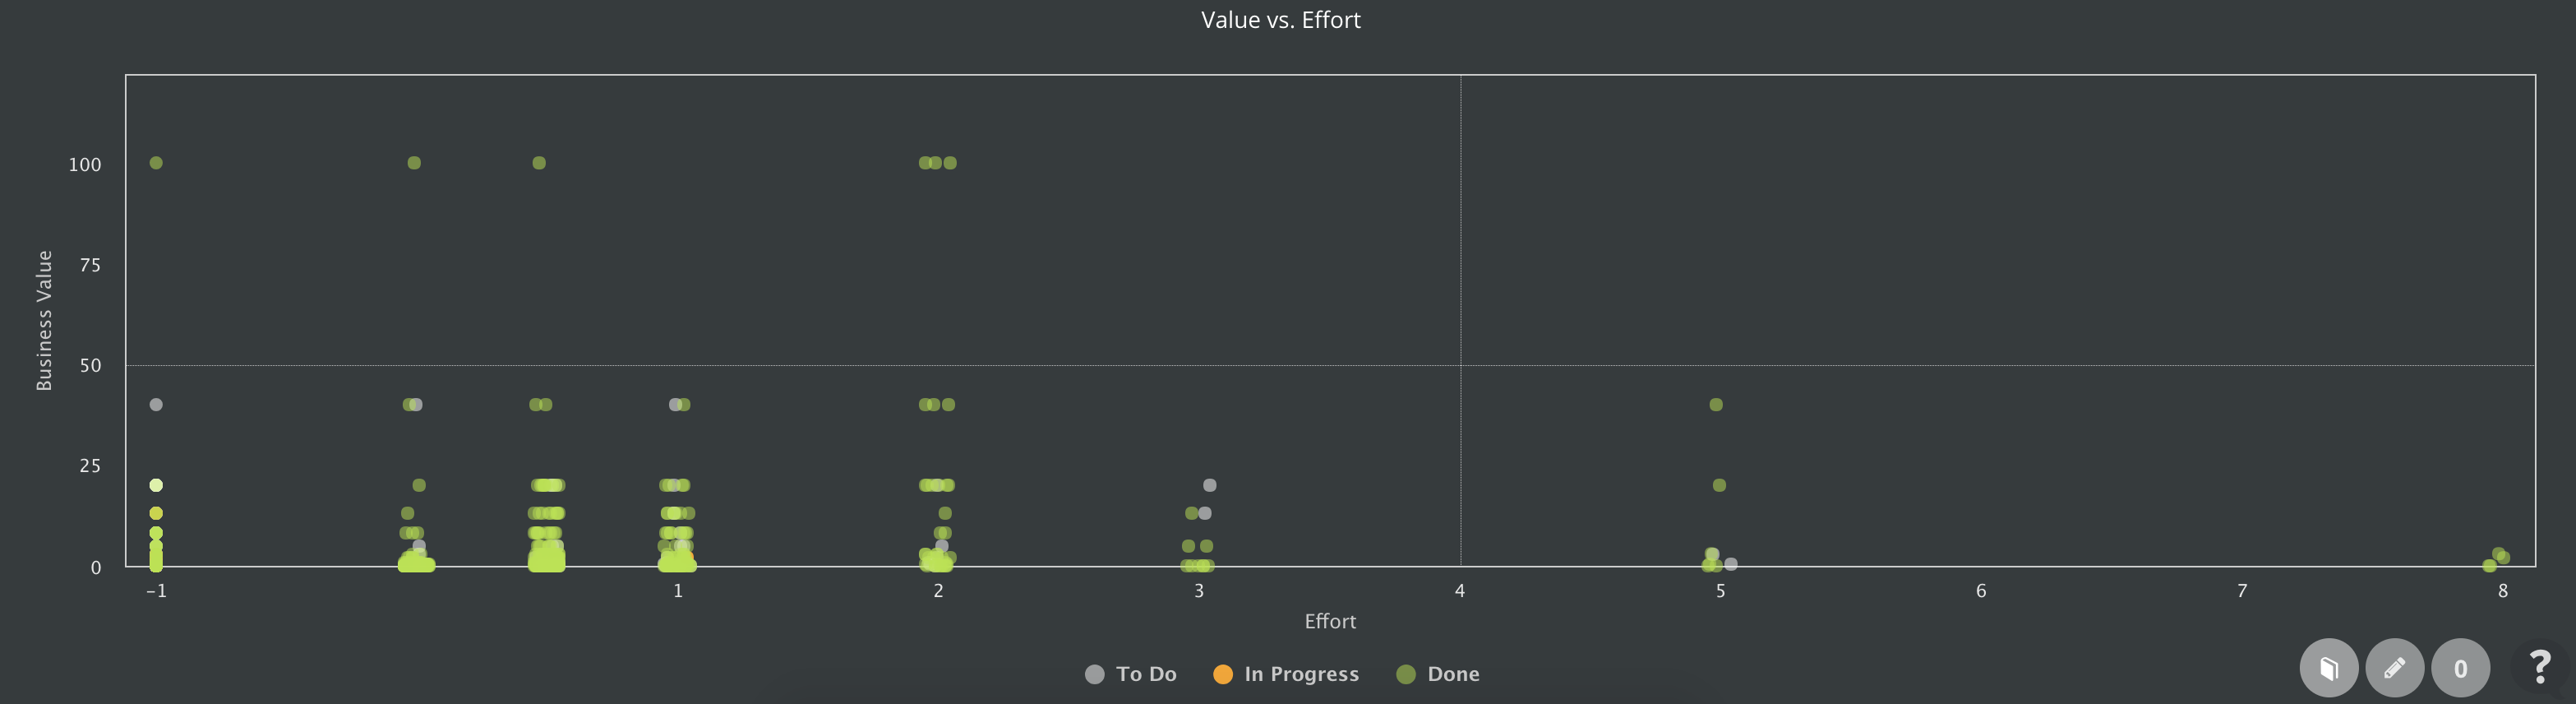 scrumdesk value vs effort chart